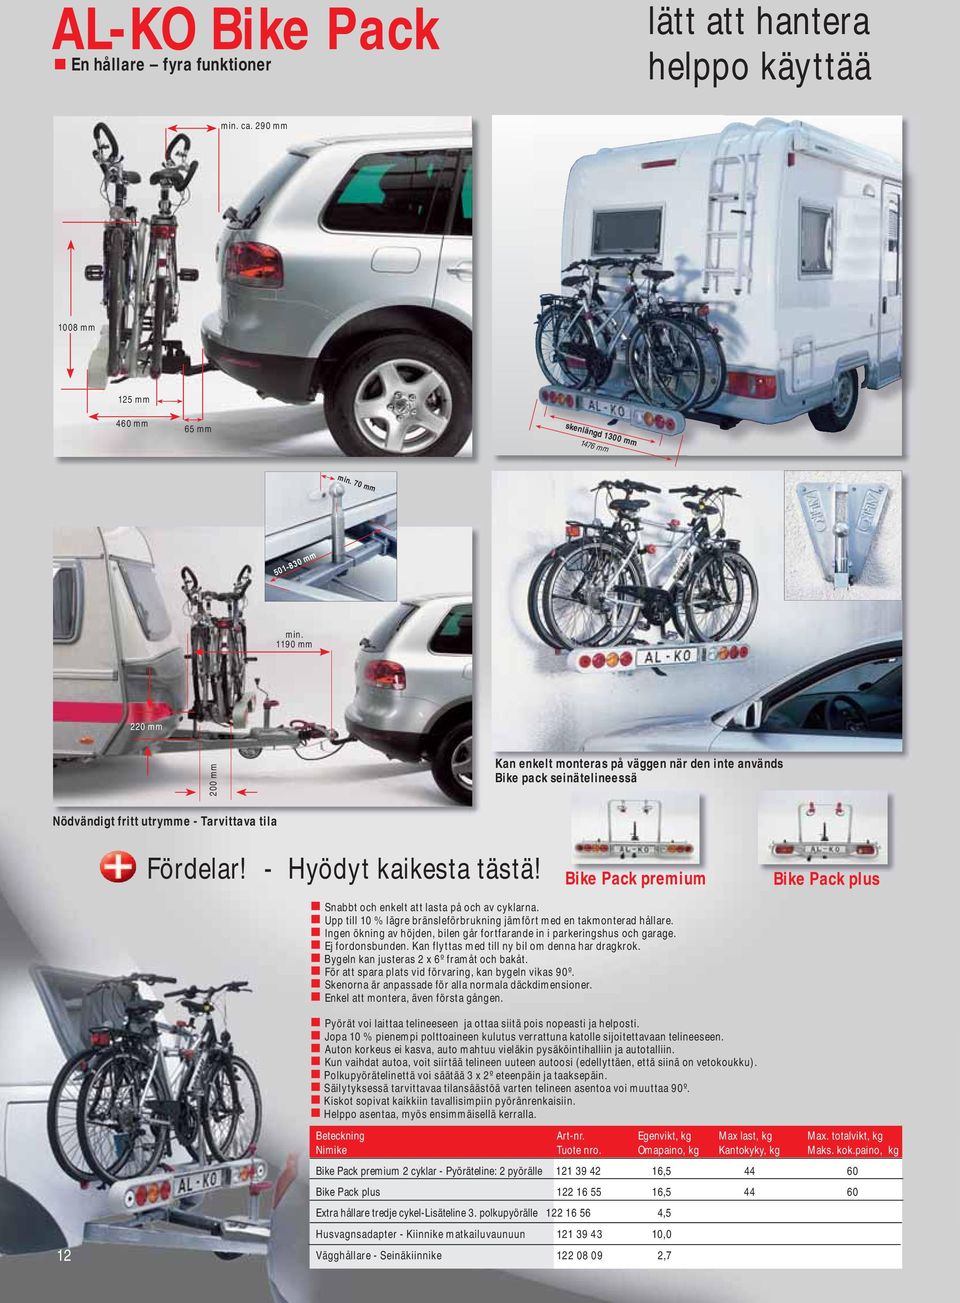 Bike Pack premium Bike Pack plus Snabbt och enkelt att lasta på och av cyklarna. Upp till 10 % lägre bränsleförbrukning jämfört med en takmonterad hållare.